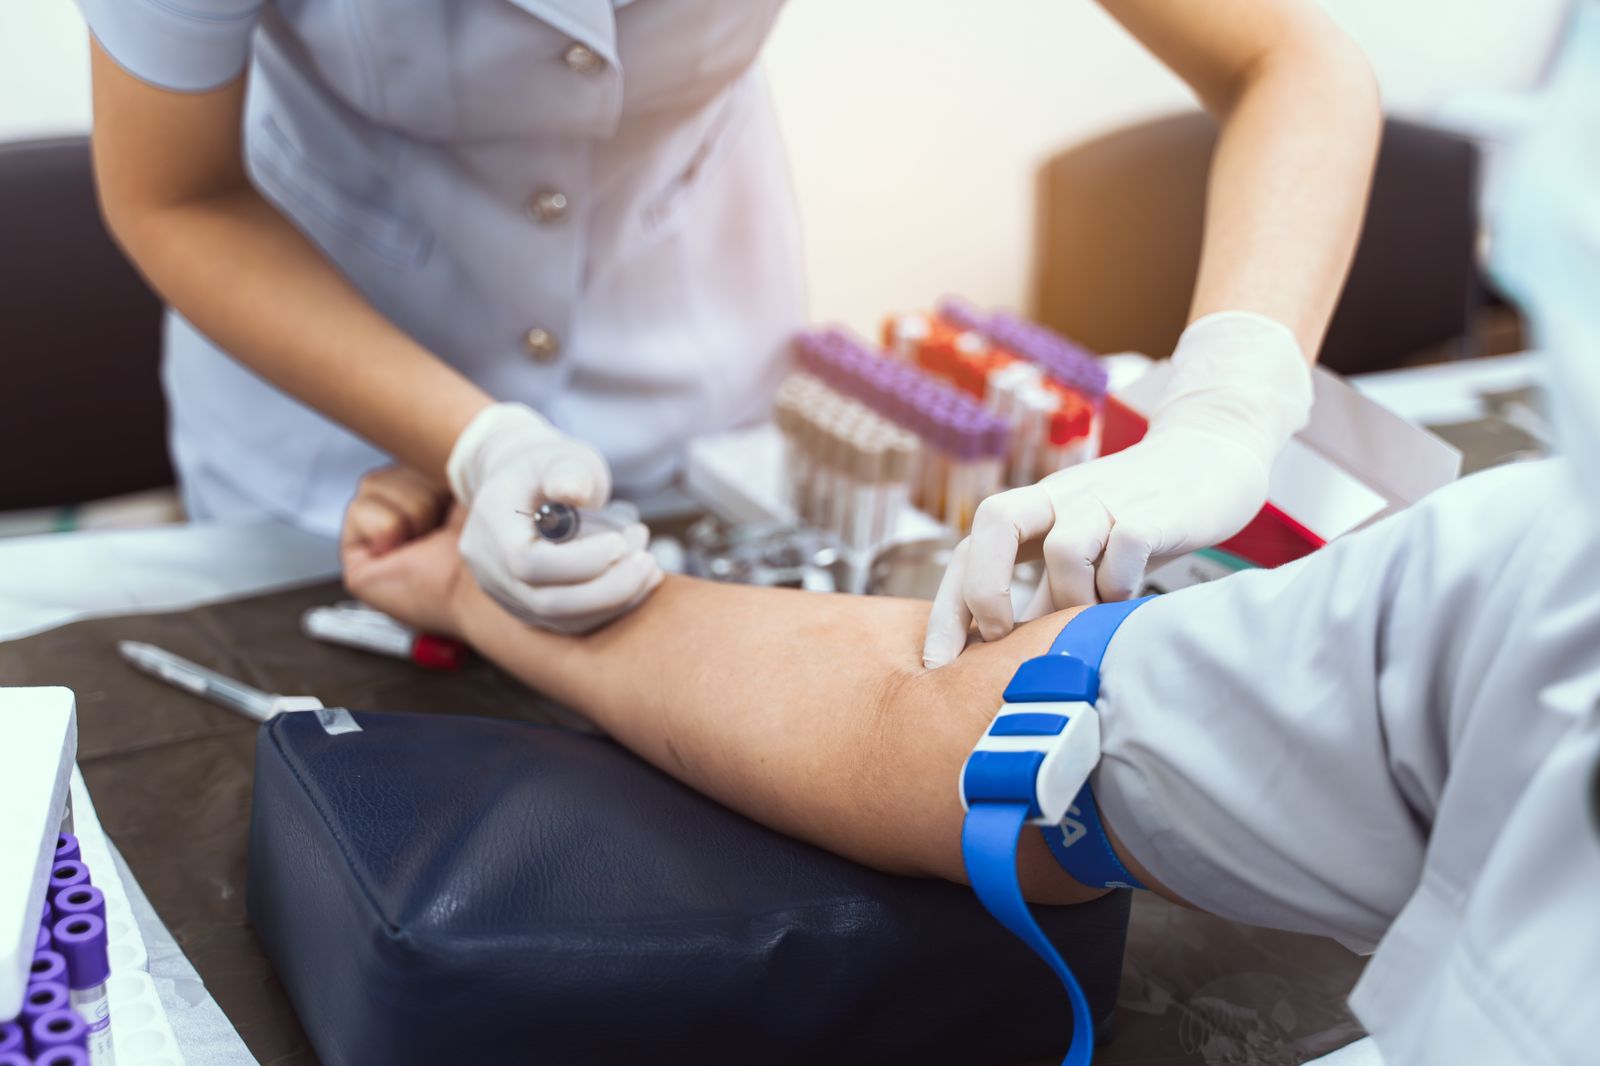  Junho Laranja: Especialista da Hapvida NotreDame Intermédica destaca a importância da prevenção e tratamento precoce da anemia